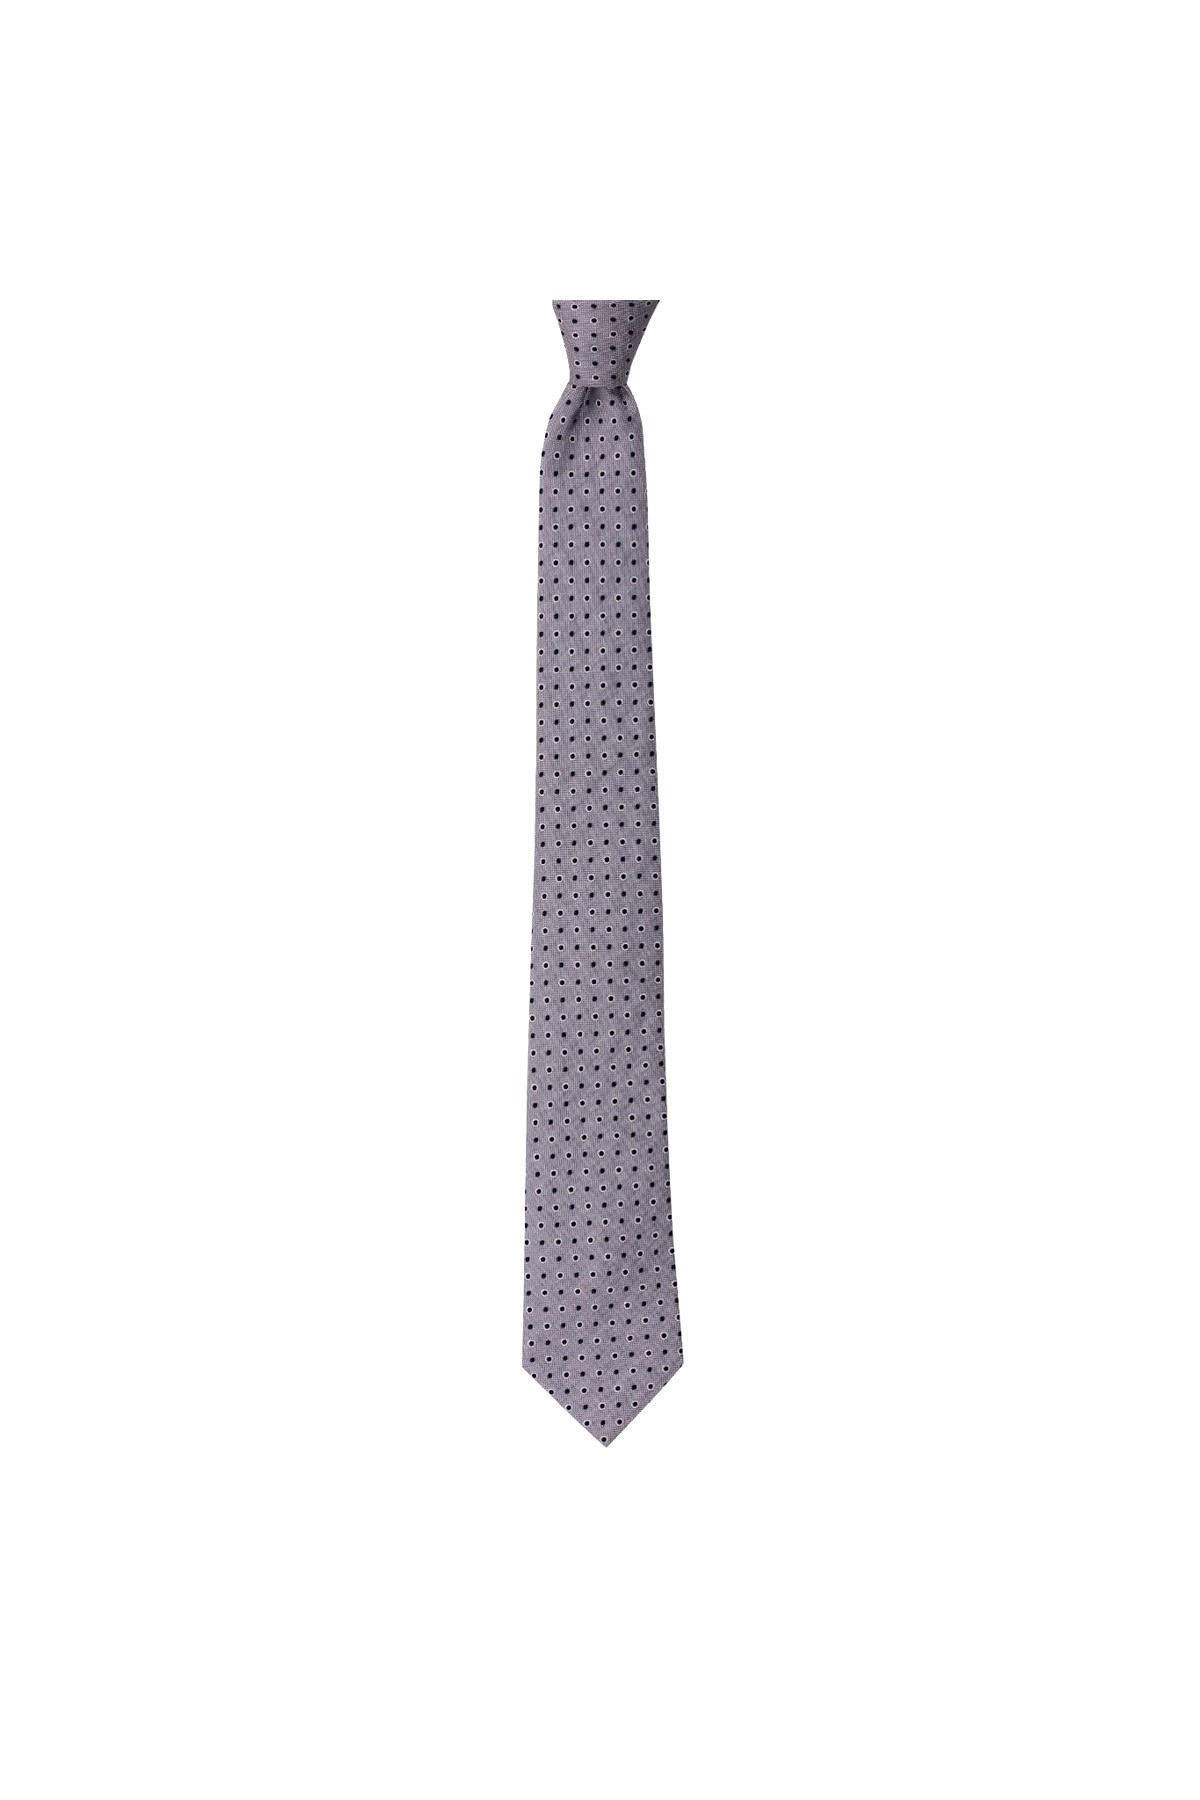 Klasik desenli 7,5 cm genişliğinde ipek kravat - Açık gri